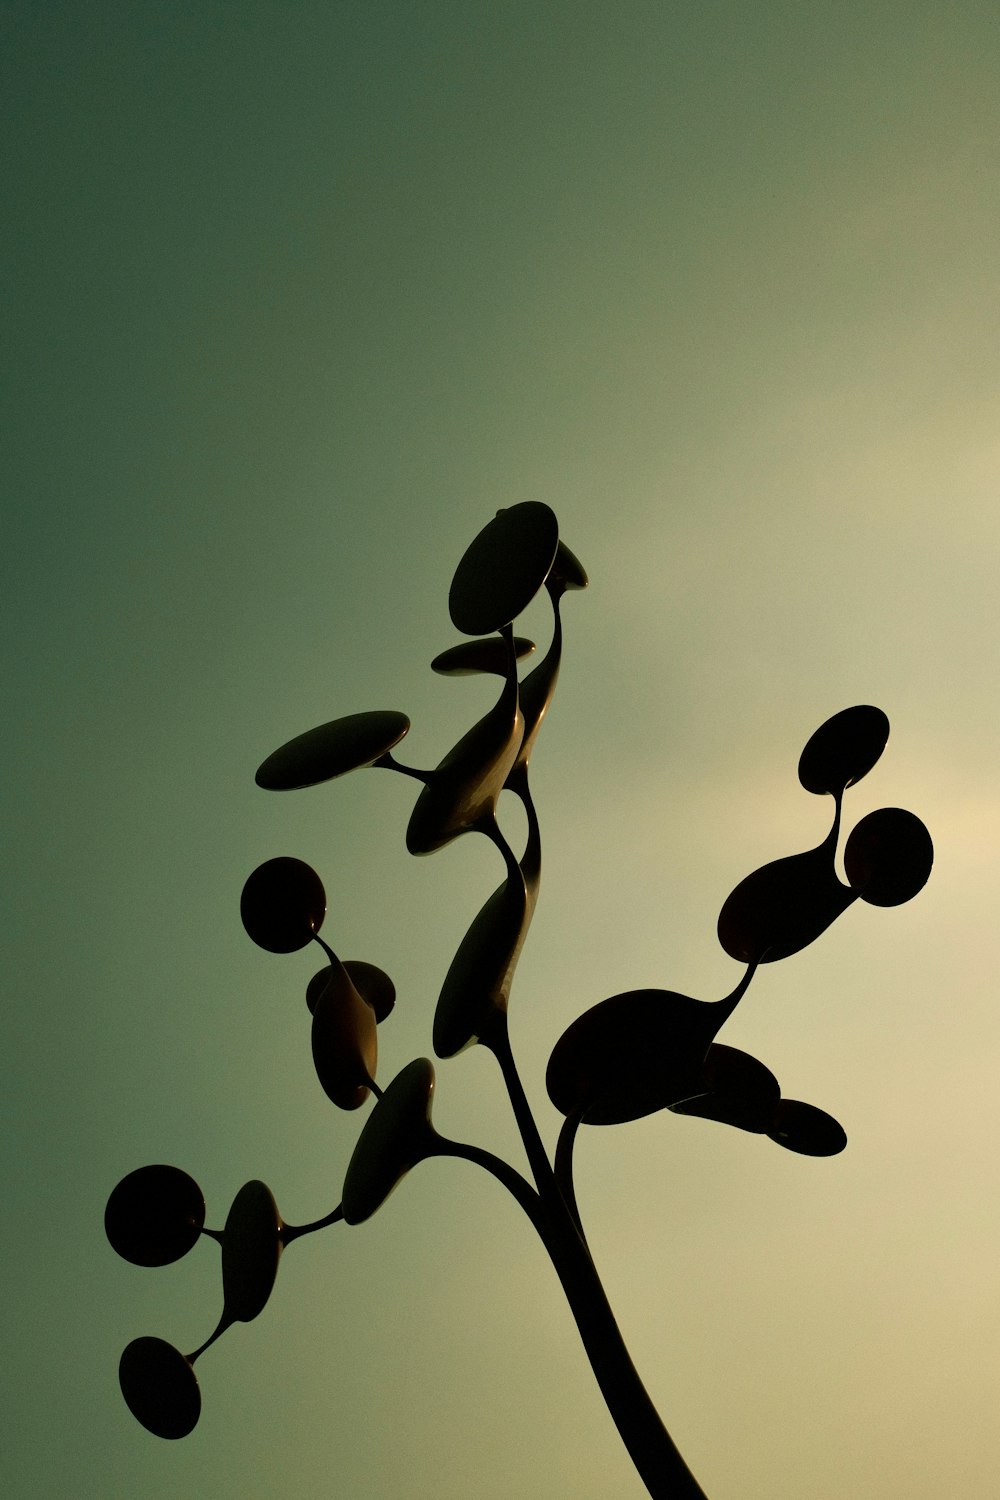 푸른 하늘을 배경으로 한 식물의 실루엣